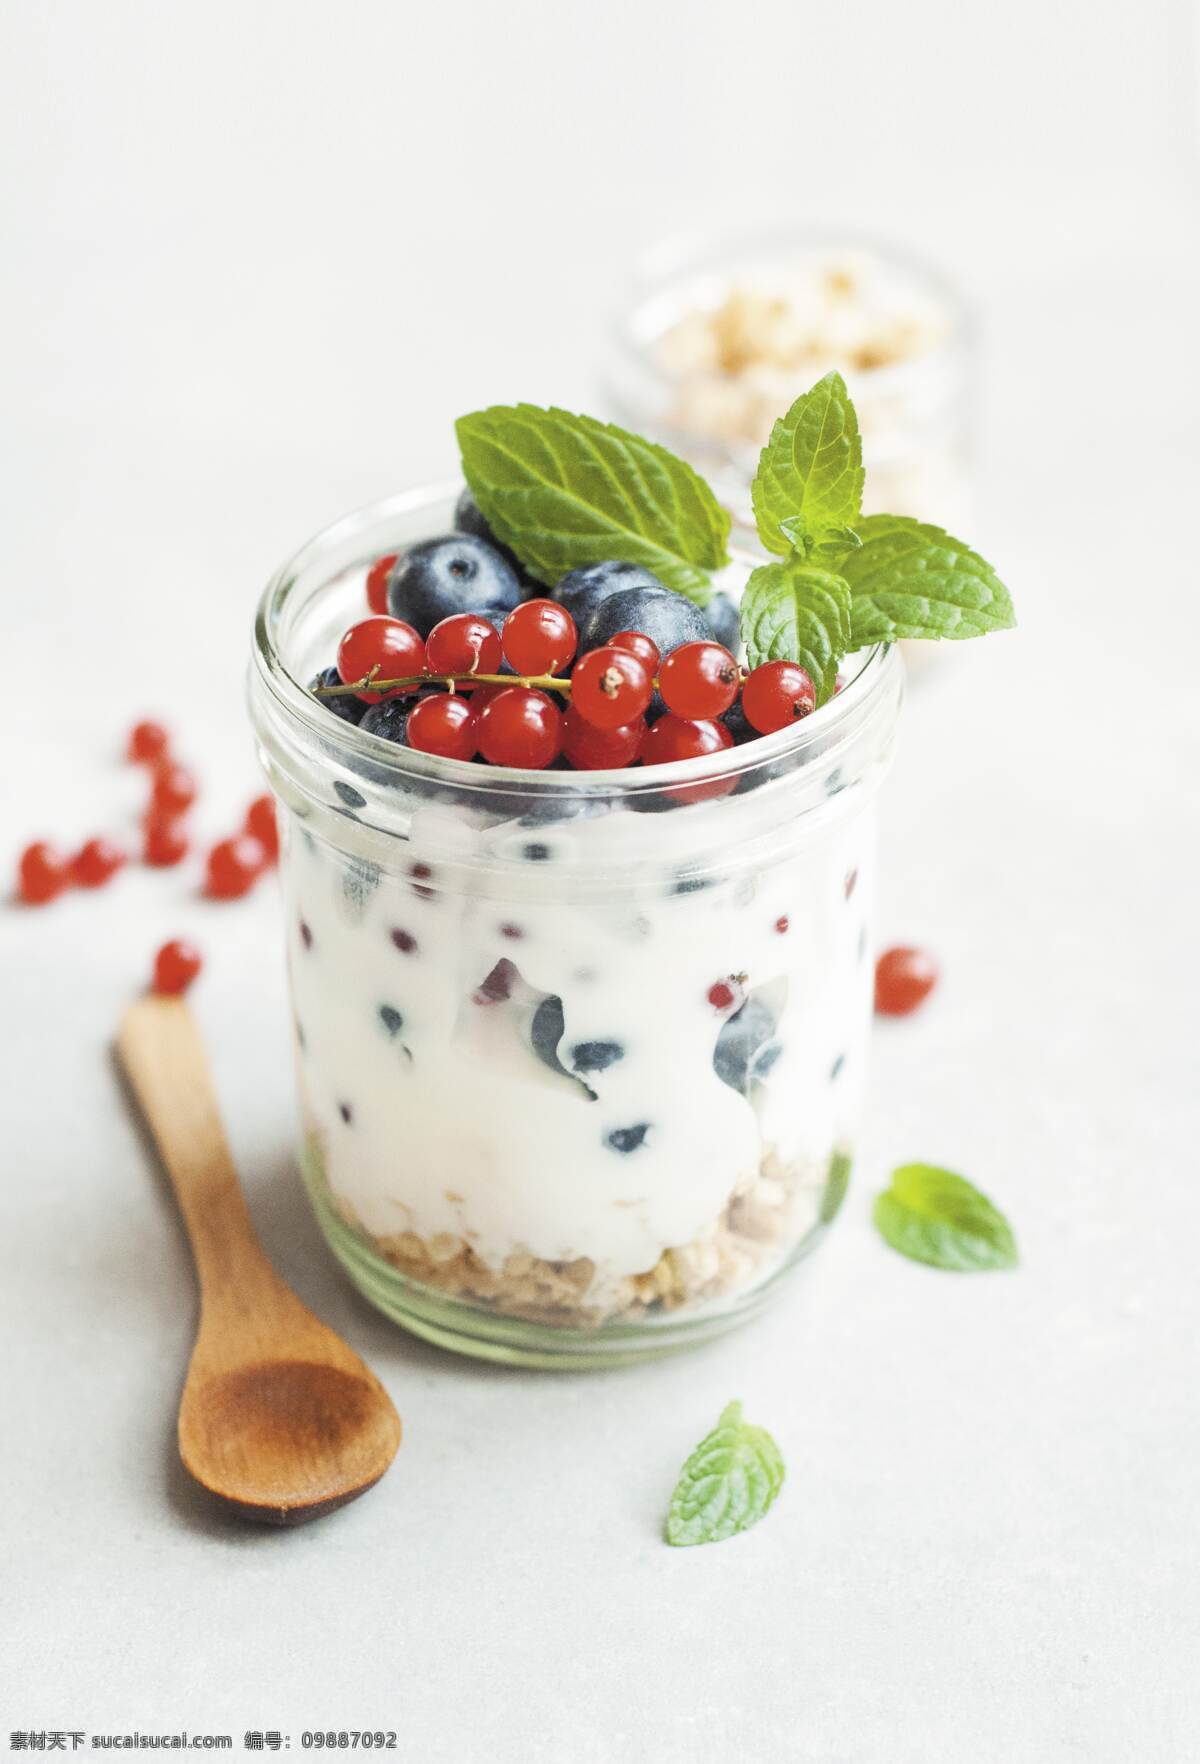 牛奶水果 水果 新鲜 白色 牛奶 红色 奶茶 杯子 勺子 绿叶 蓝莓 餐饮美食 食物原料